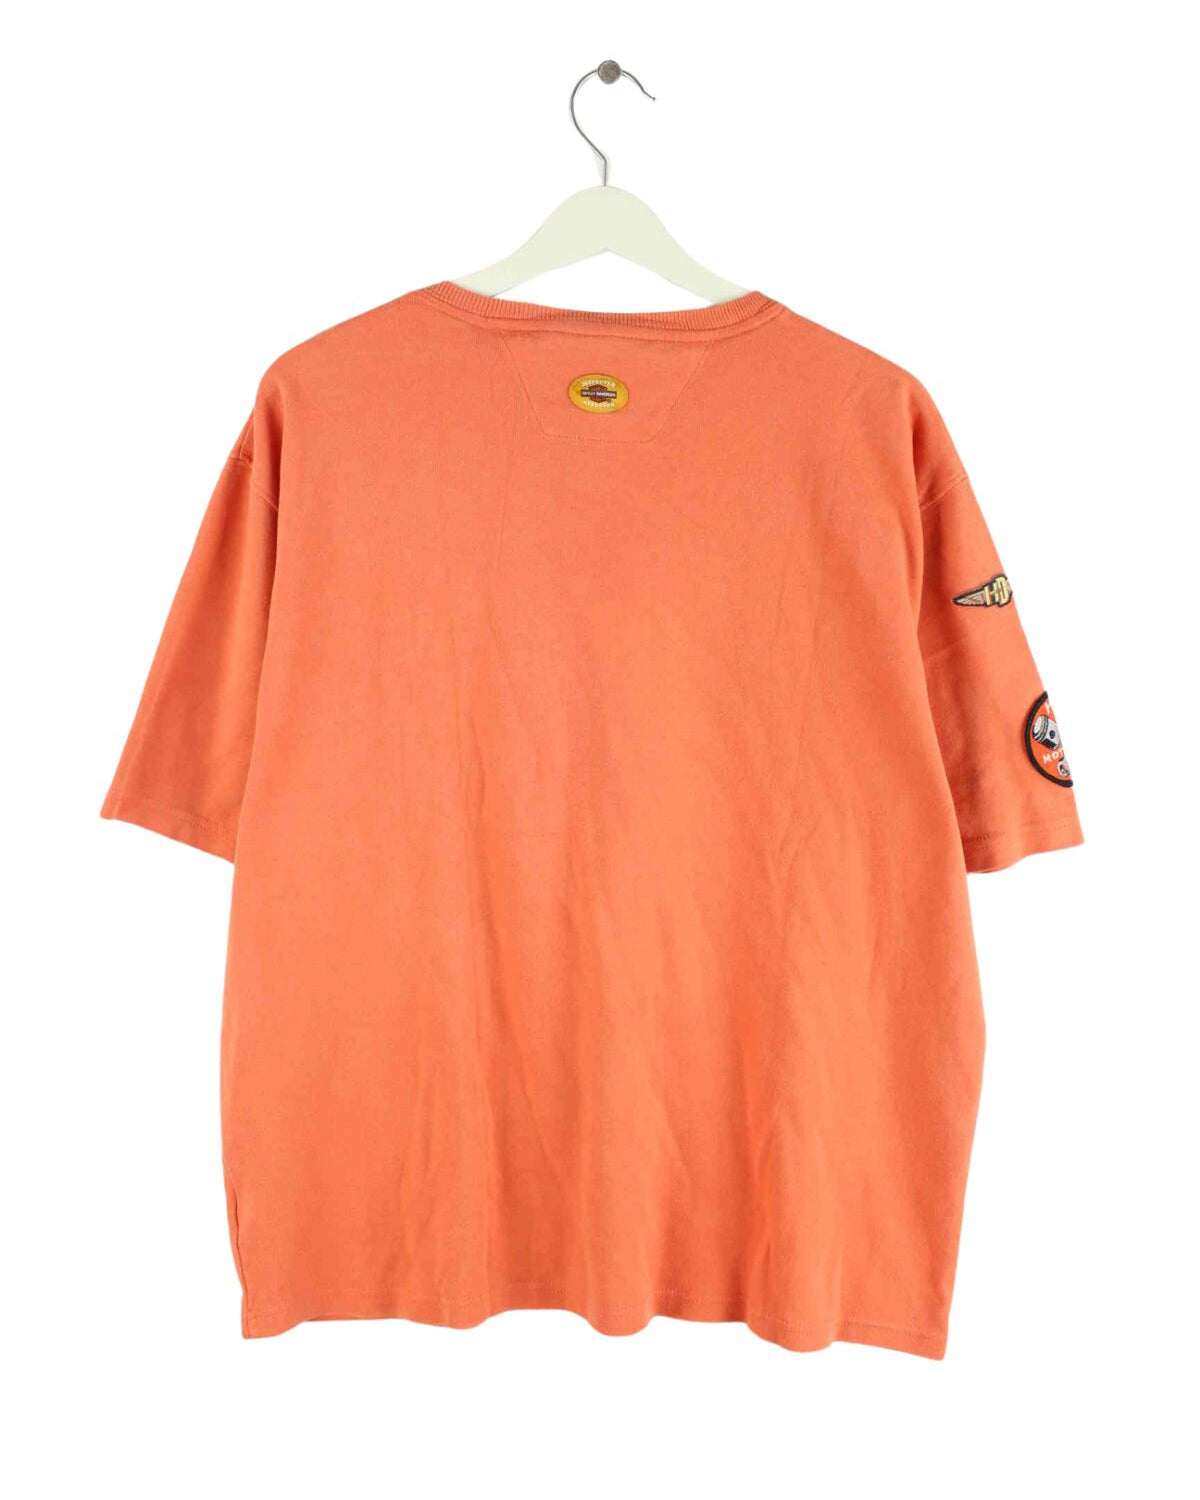 Harley Davidson 90s Vintage Patch T-Shirt Orange L (back image)